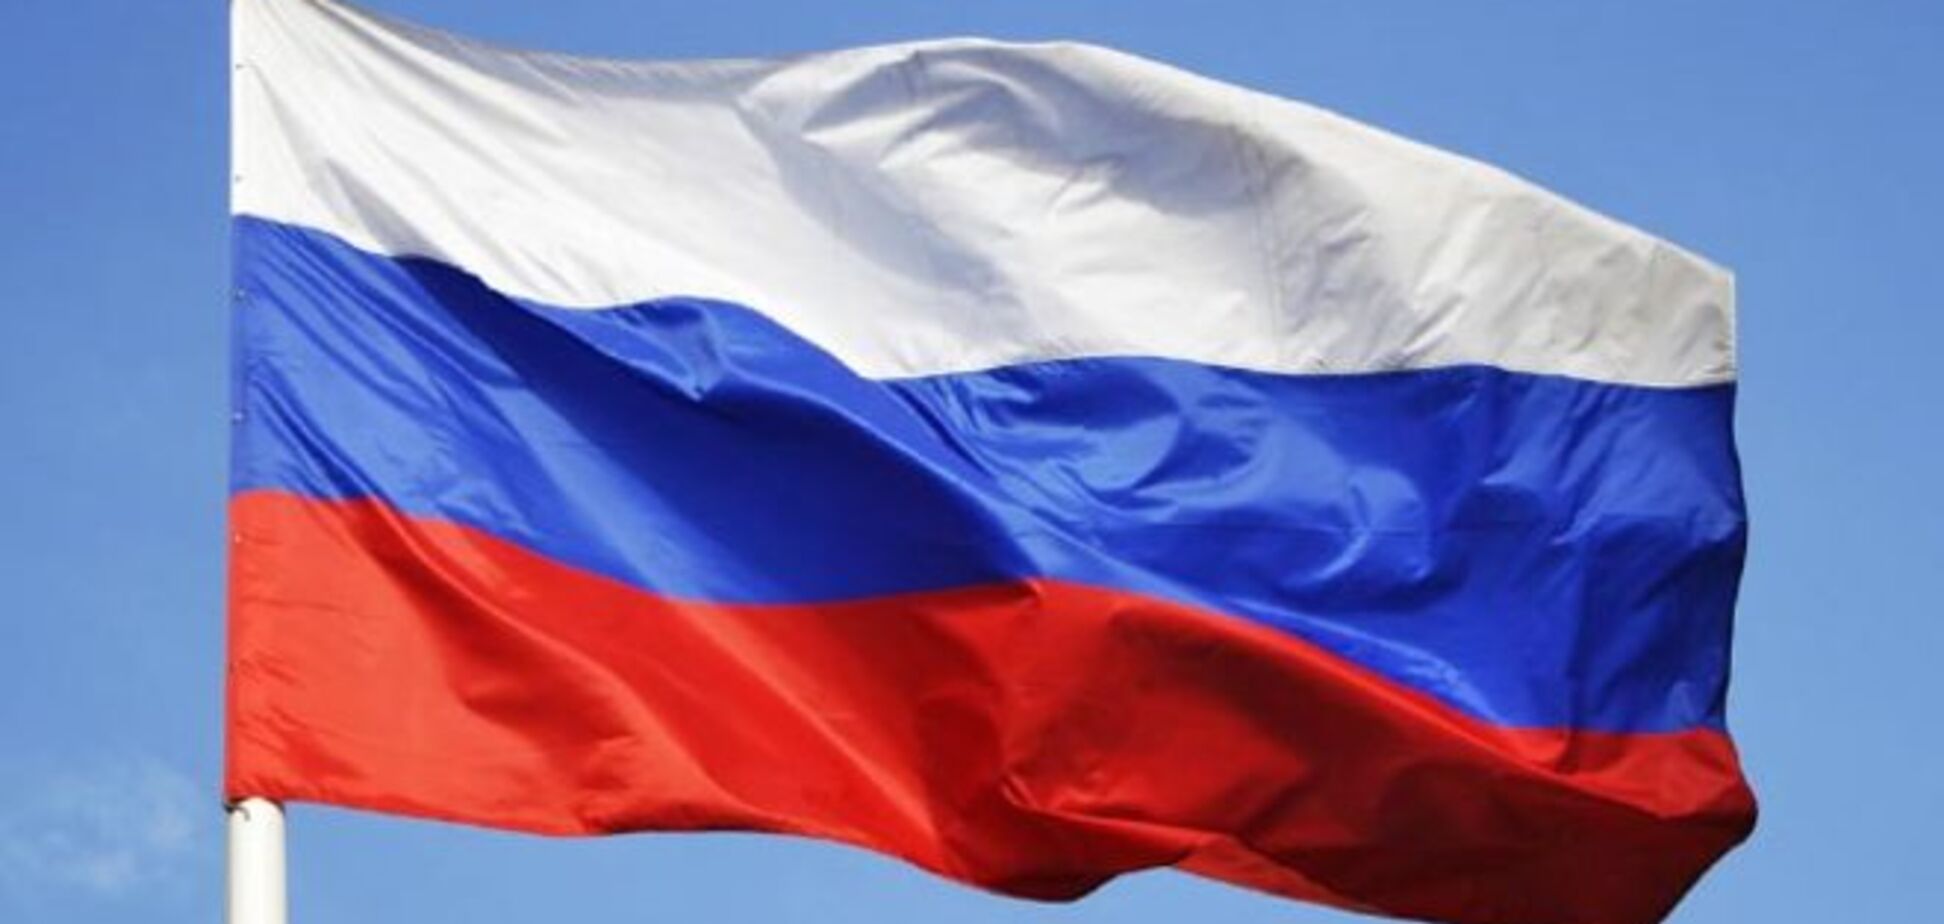 Мер Горлівки під дулом пістолетів видав розпорядження: вивісити на будівлях прапор Росії